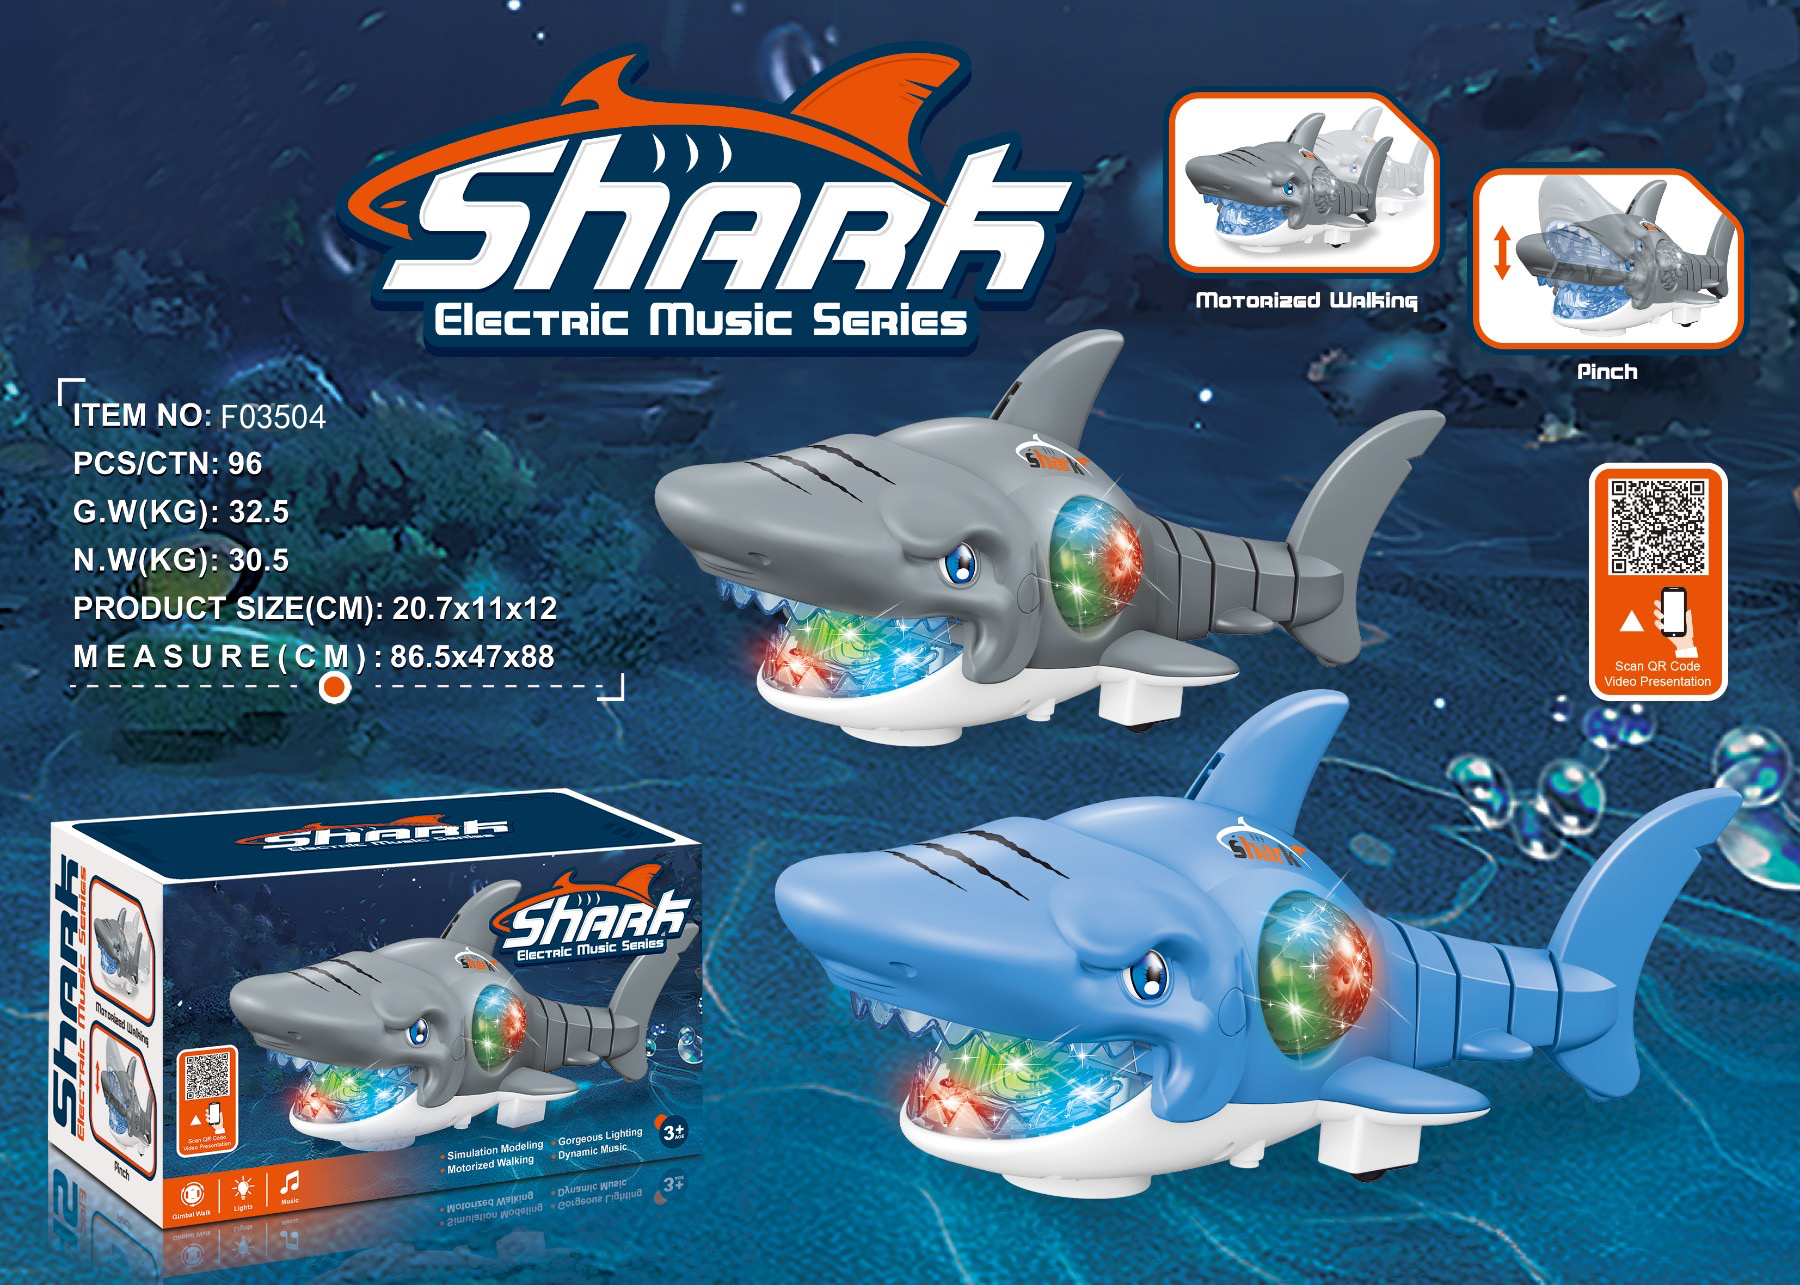 电动鲨鱼 玩具鲨鱼 玩具动物 电动大嘴鲨鱼 新奇玩具JUGUETES 外贸玩具TOYS